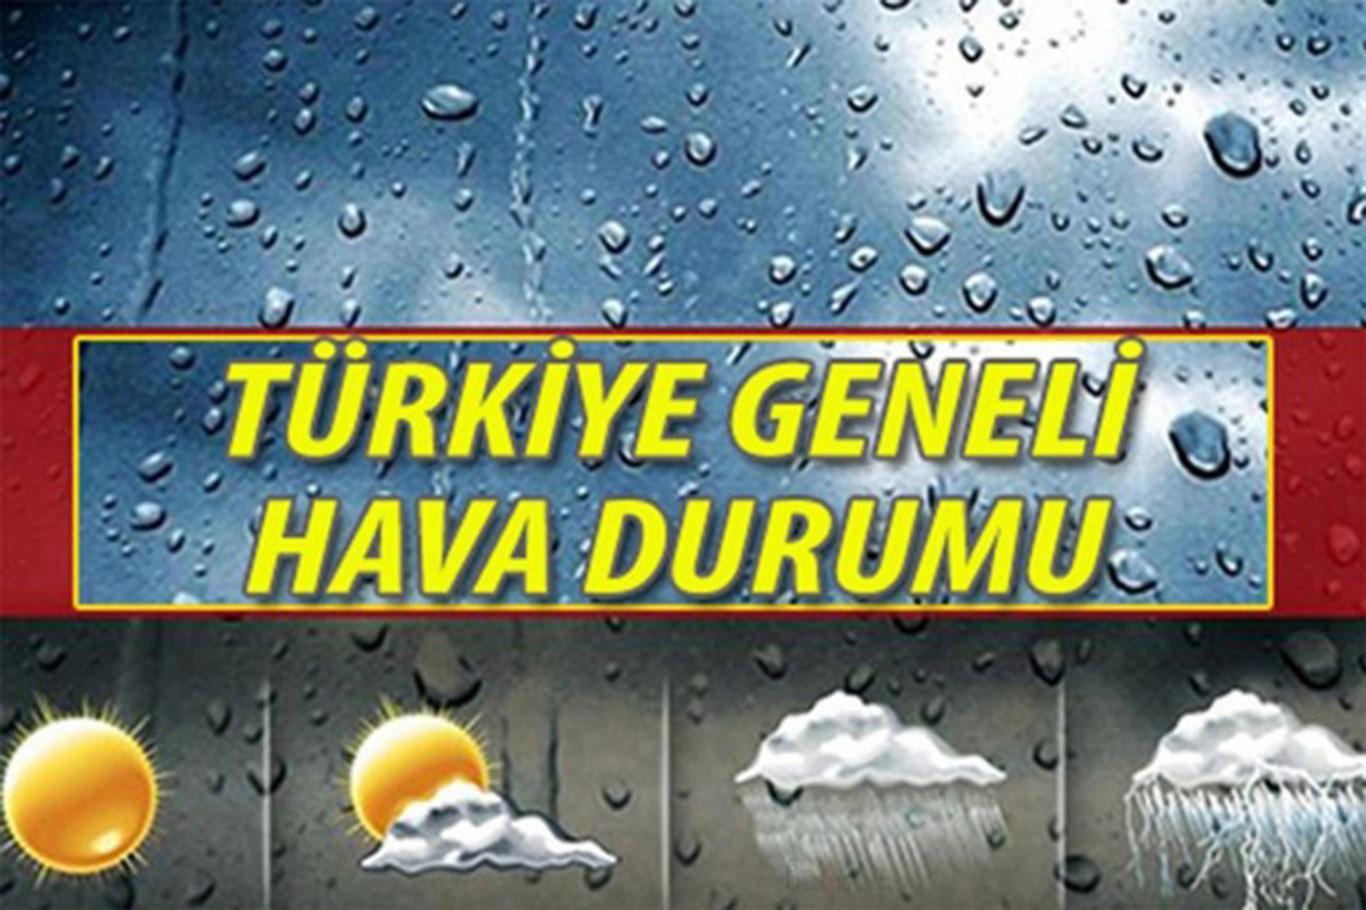 Türkiye genelinde hava durumu nasıl olacak?